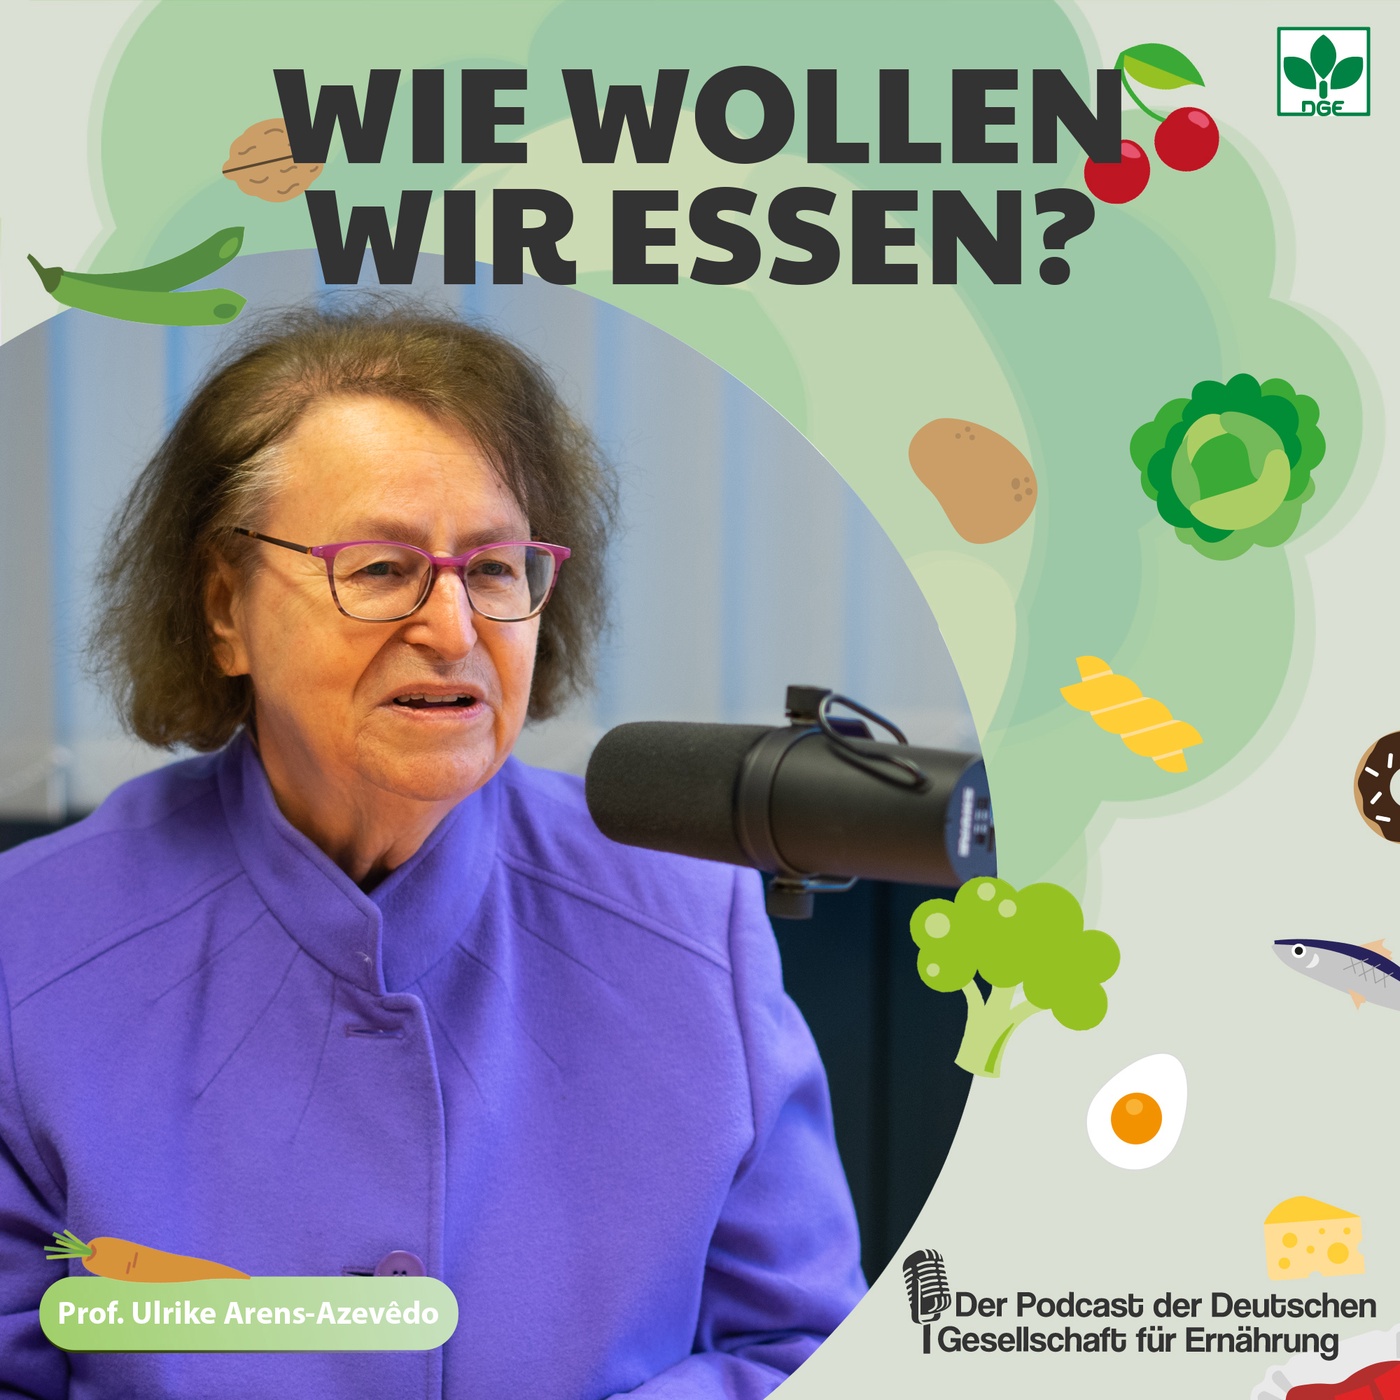 Gemeinsam Nachhaltiger! - Ernährung und Nachhaltigkeit mit Prof. Ulrike Arens-Azevêdo (S1F1)